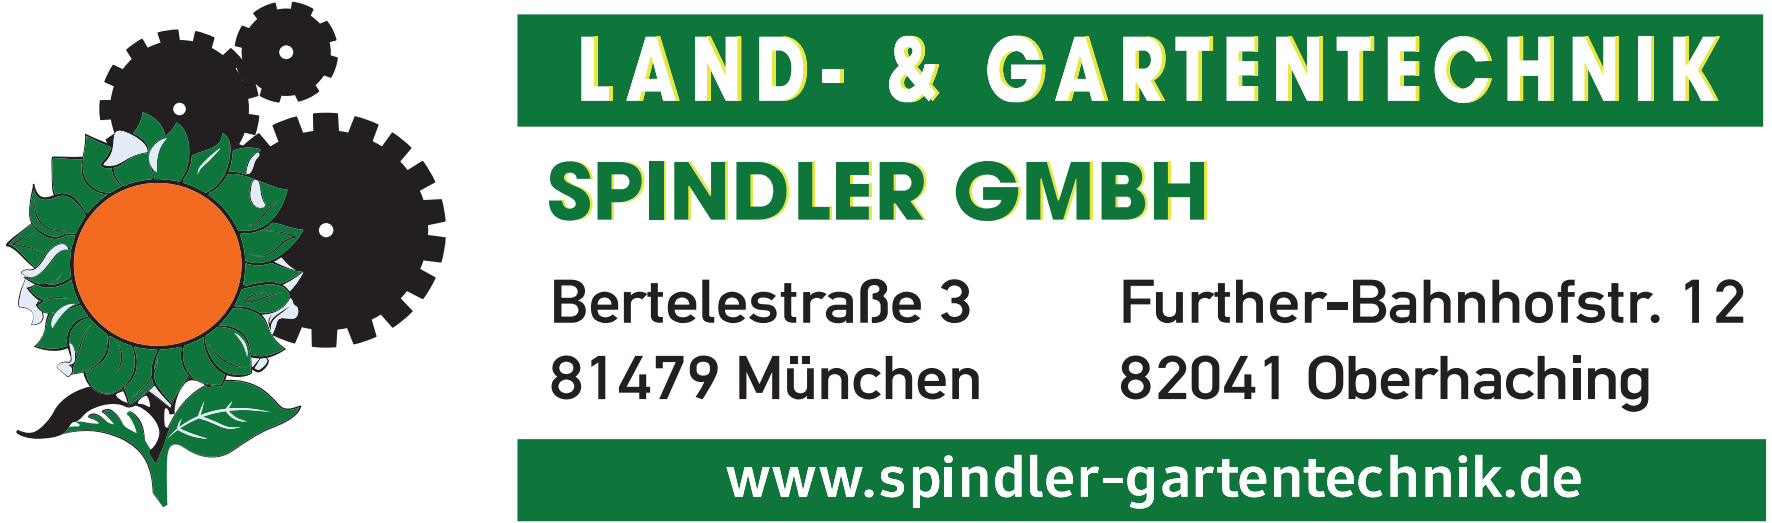 (c) Spindler-gartentechnik.de